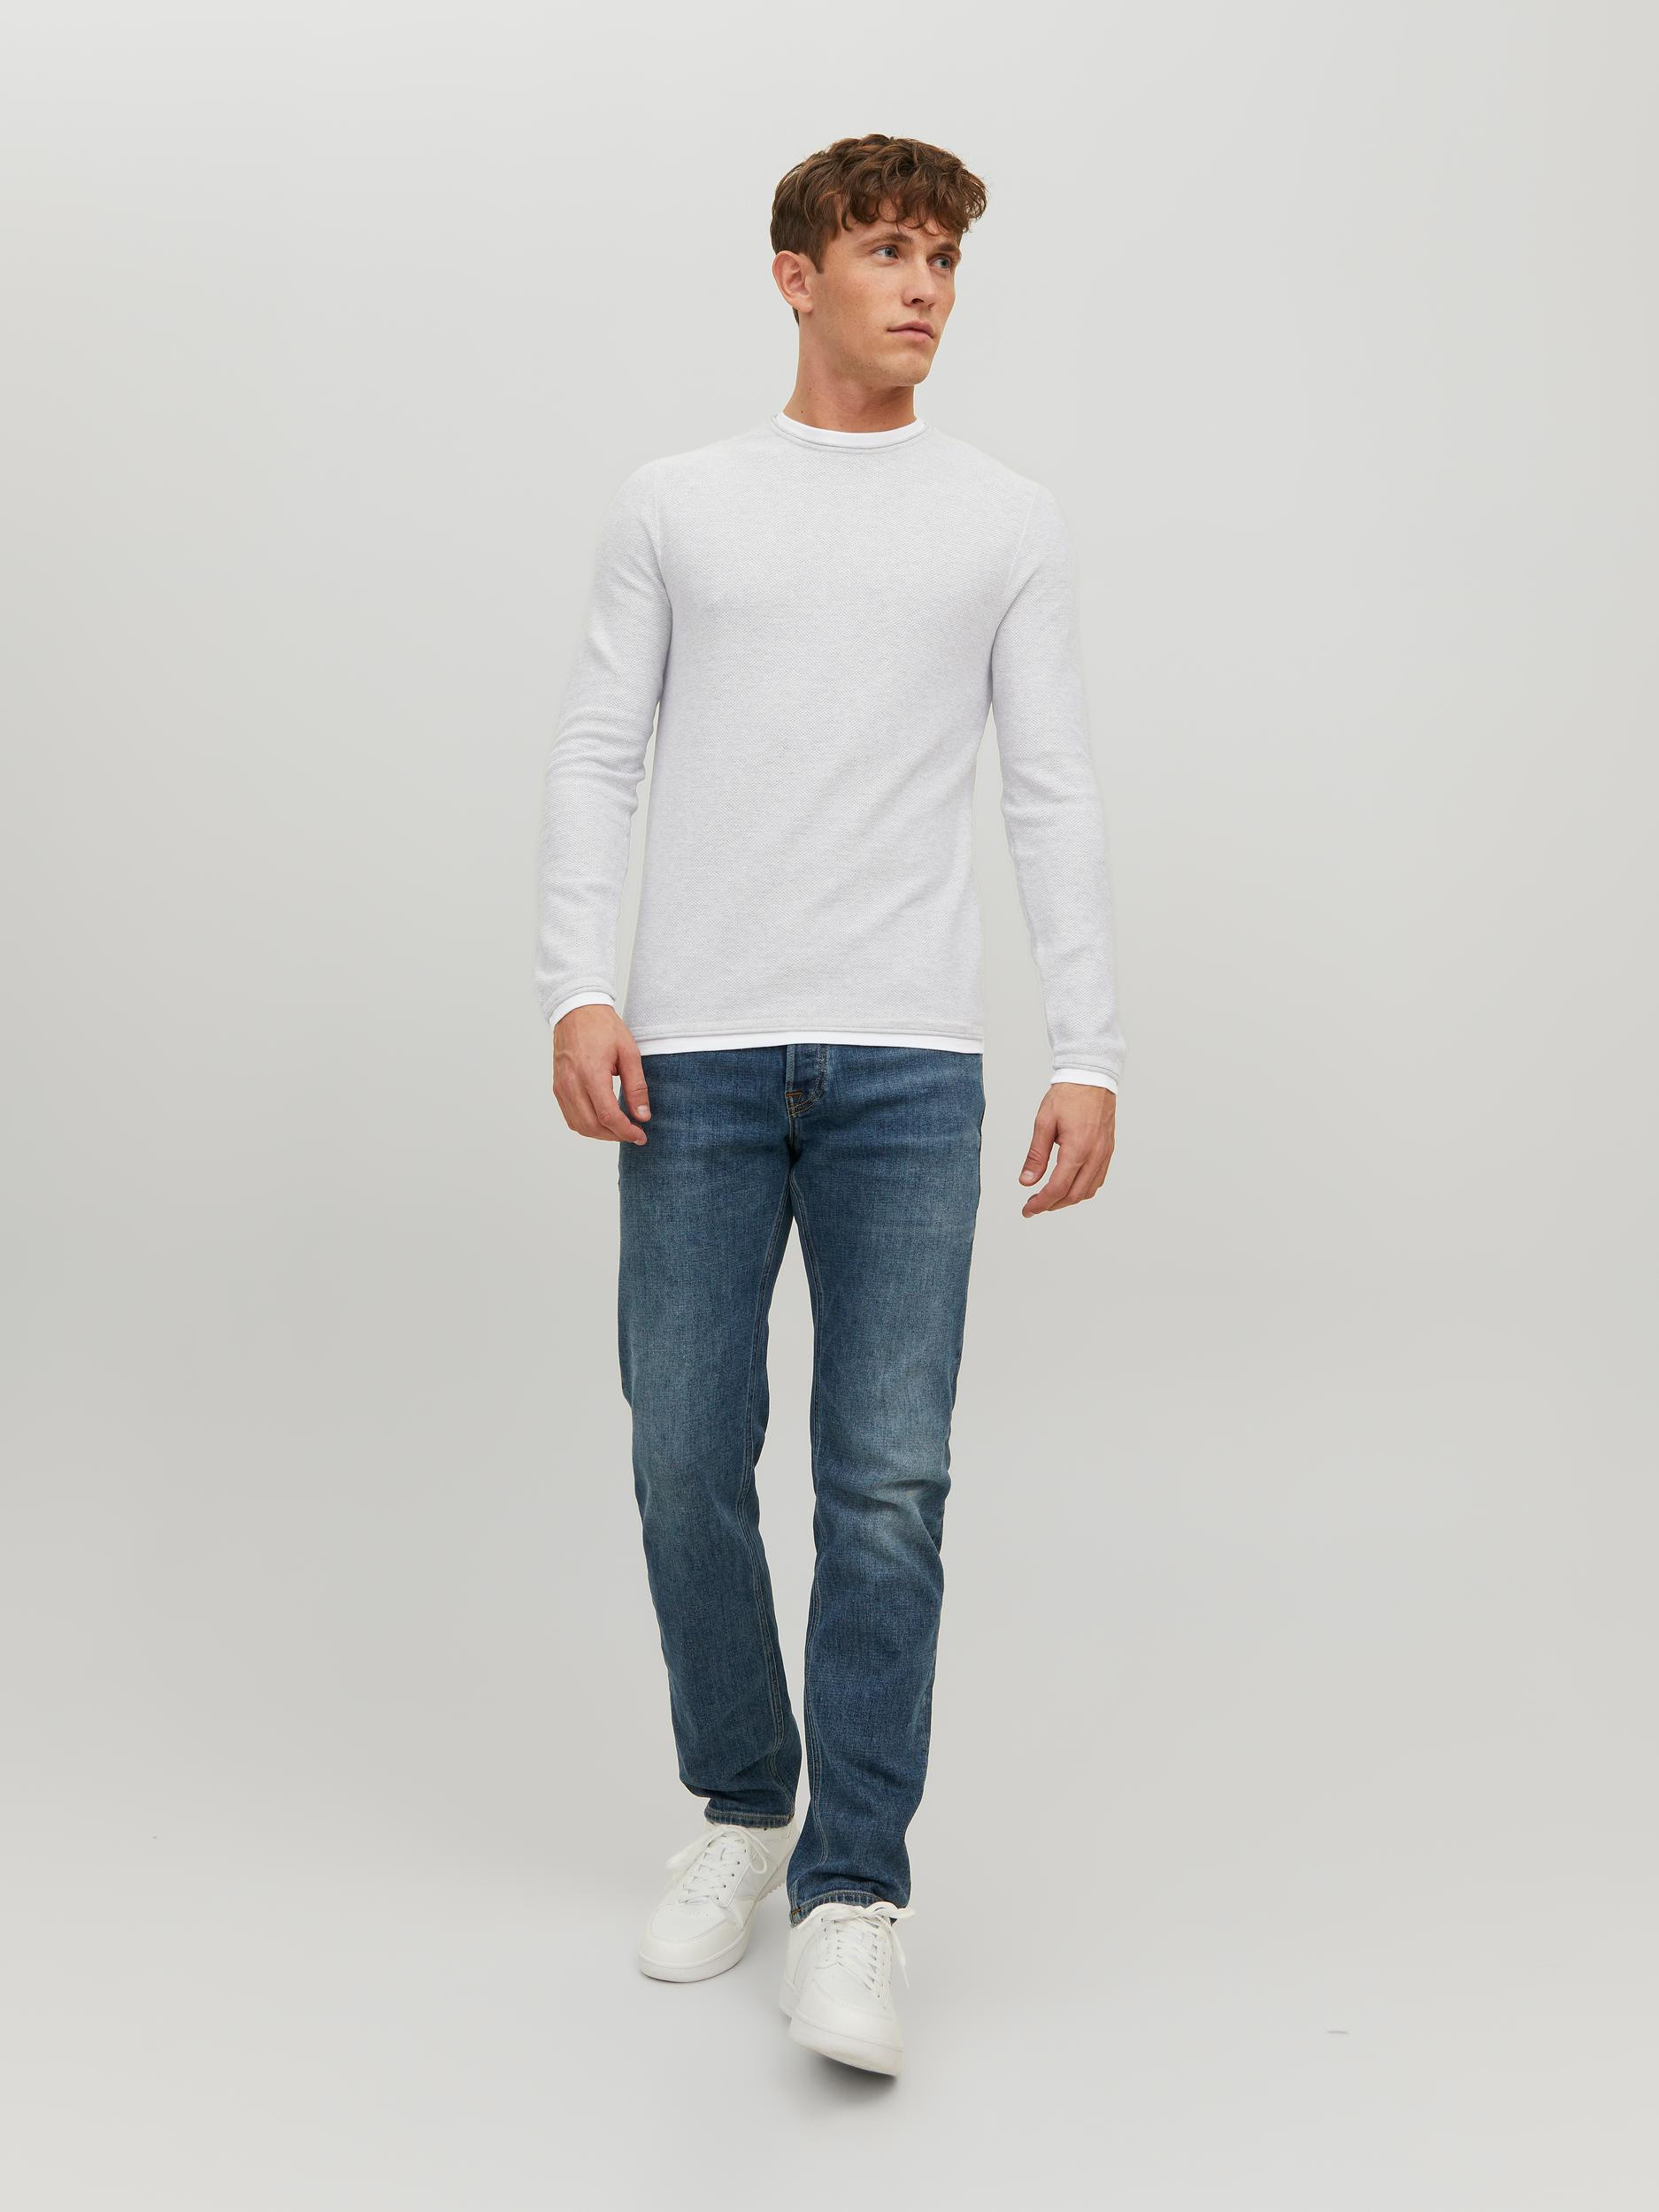 Jack & Jones - Cotton pullover, Light Grey, large image number 2